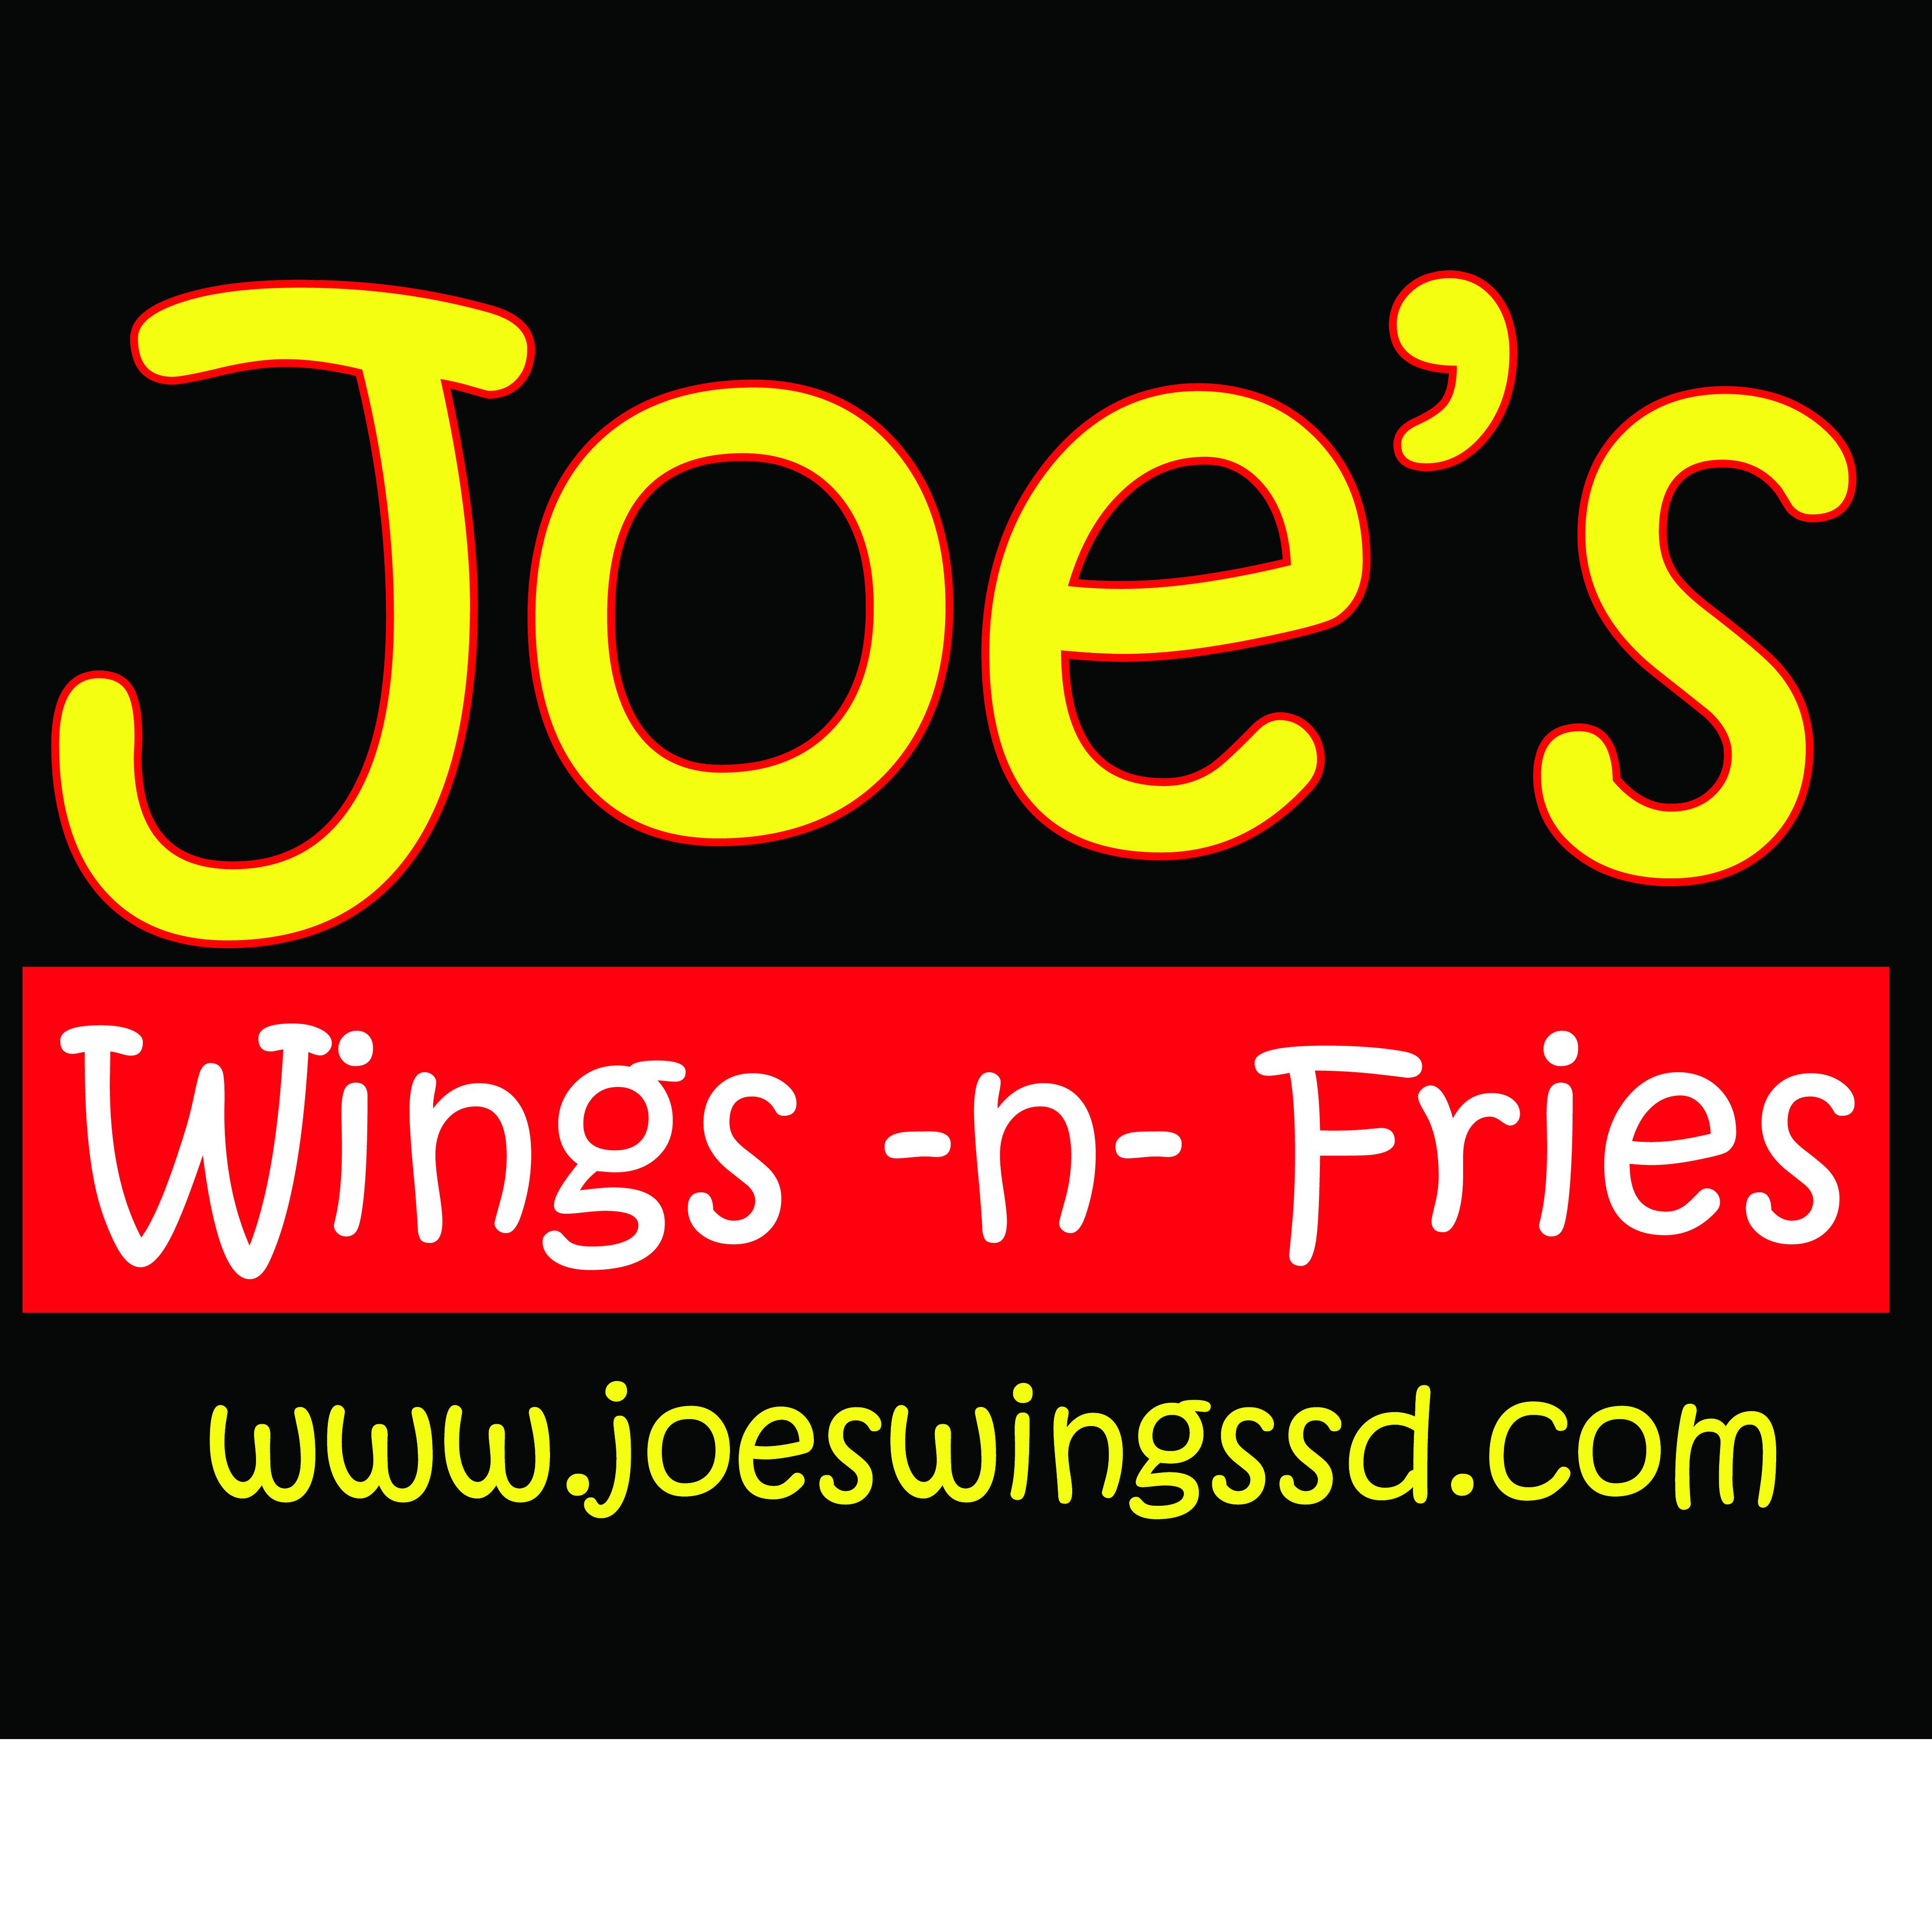 Joe's Wings -n- Fries Logo